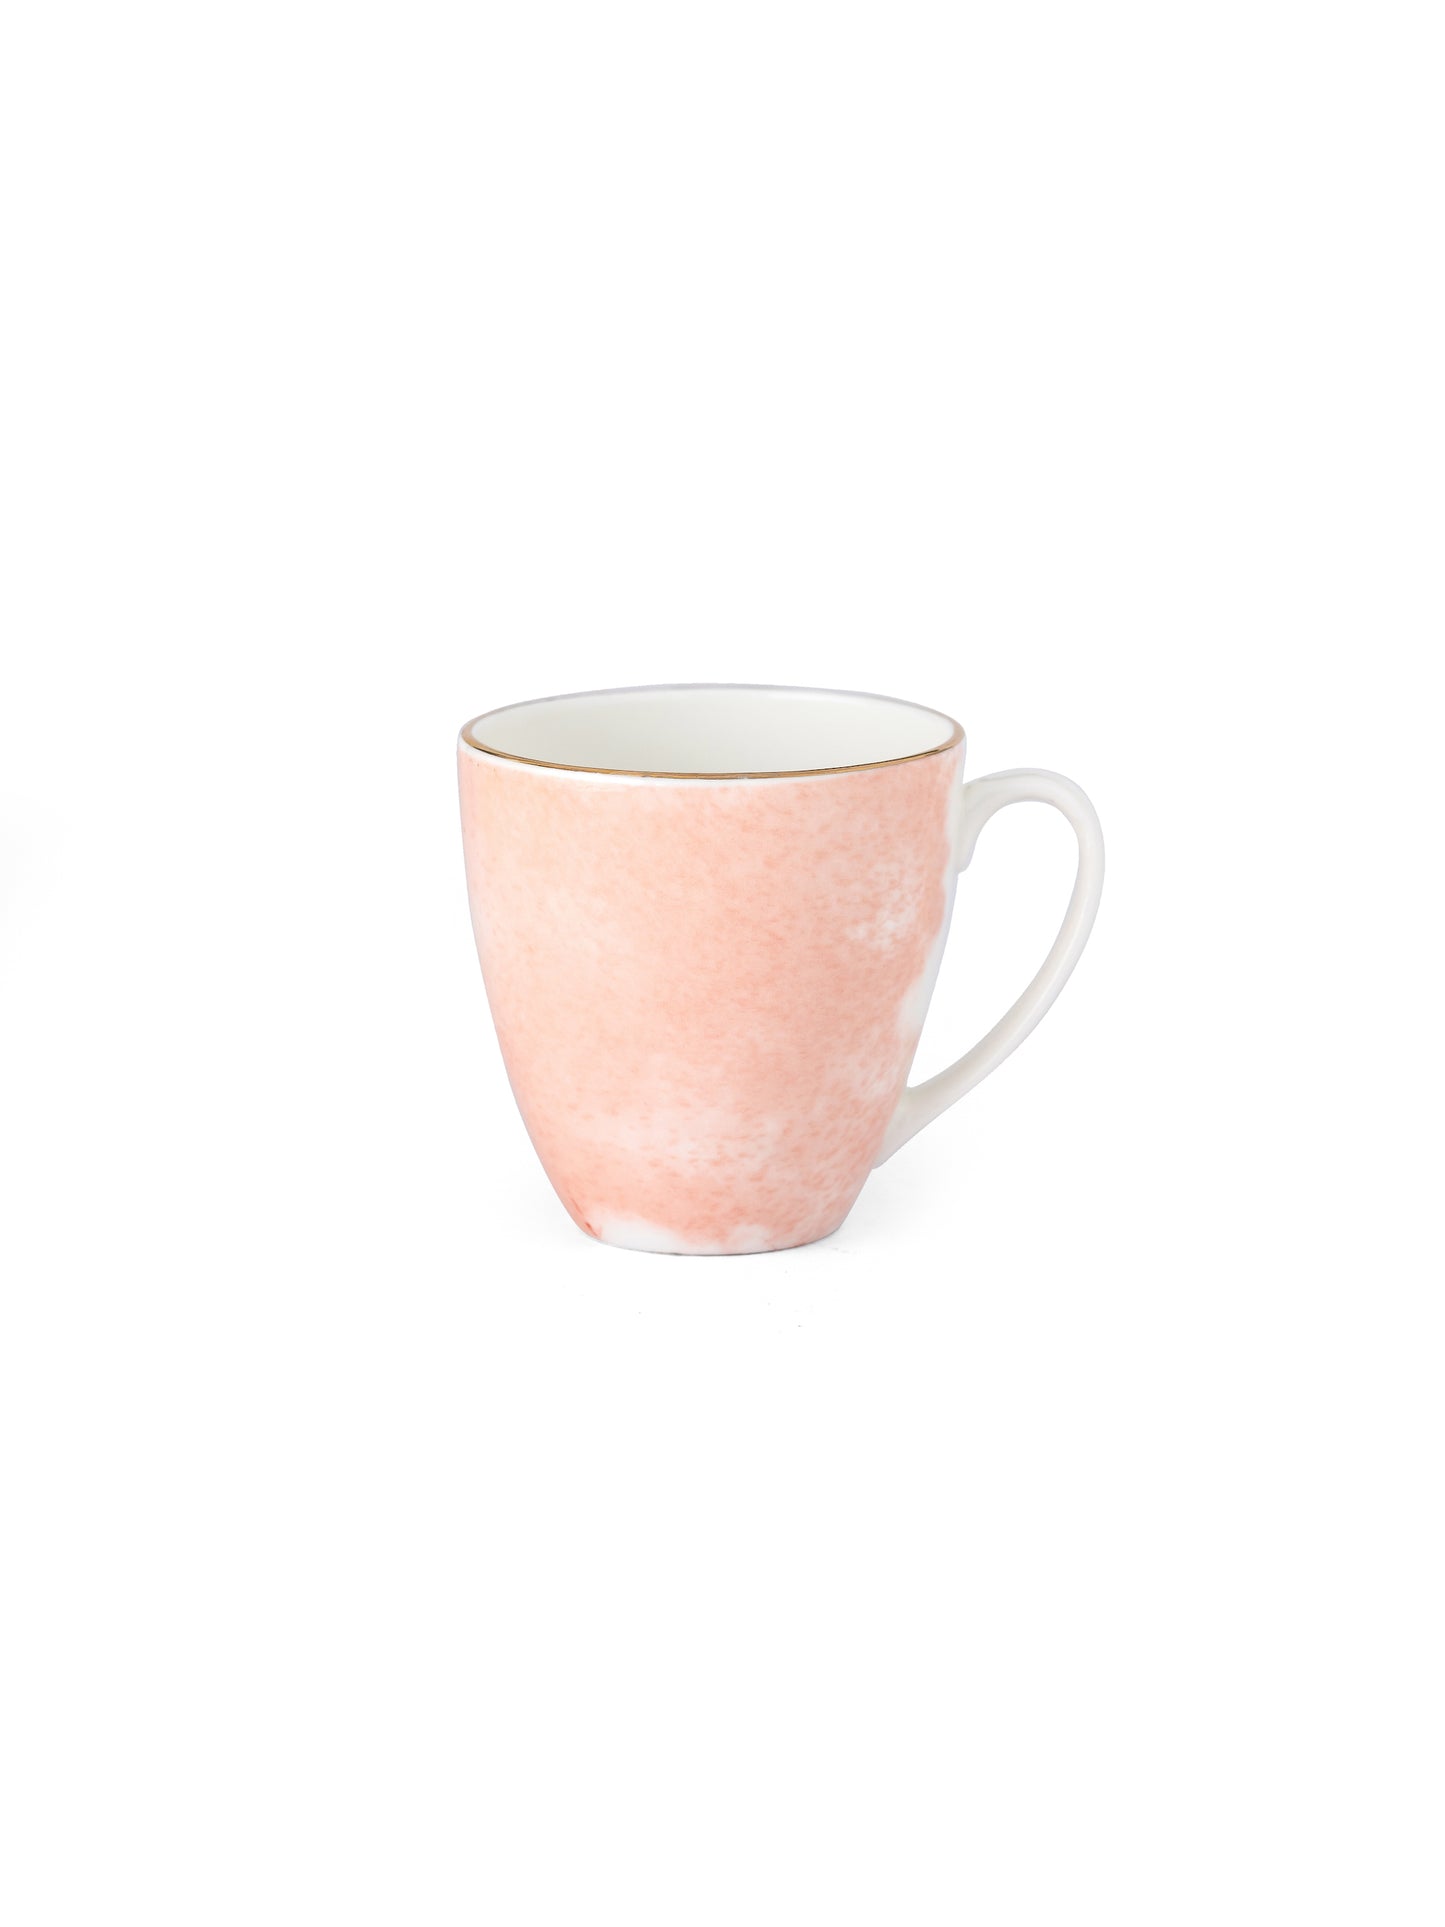 Excel Paradise Coffee & Tea Mugs, 220ml, Set of 6 (P502)